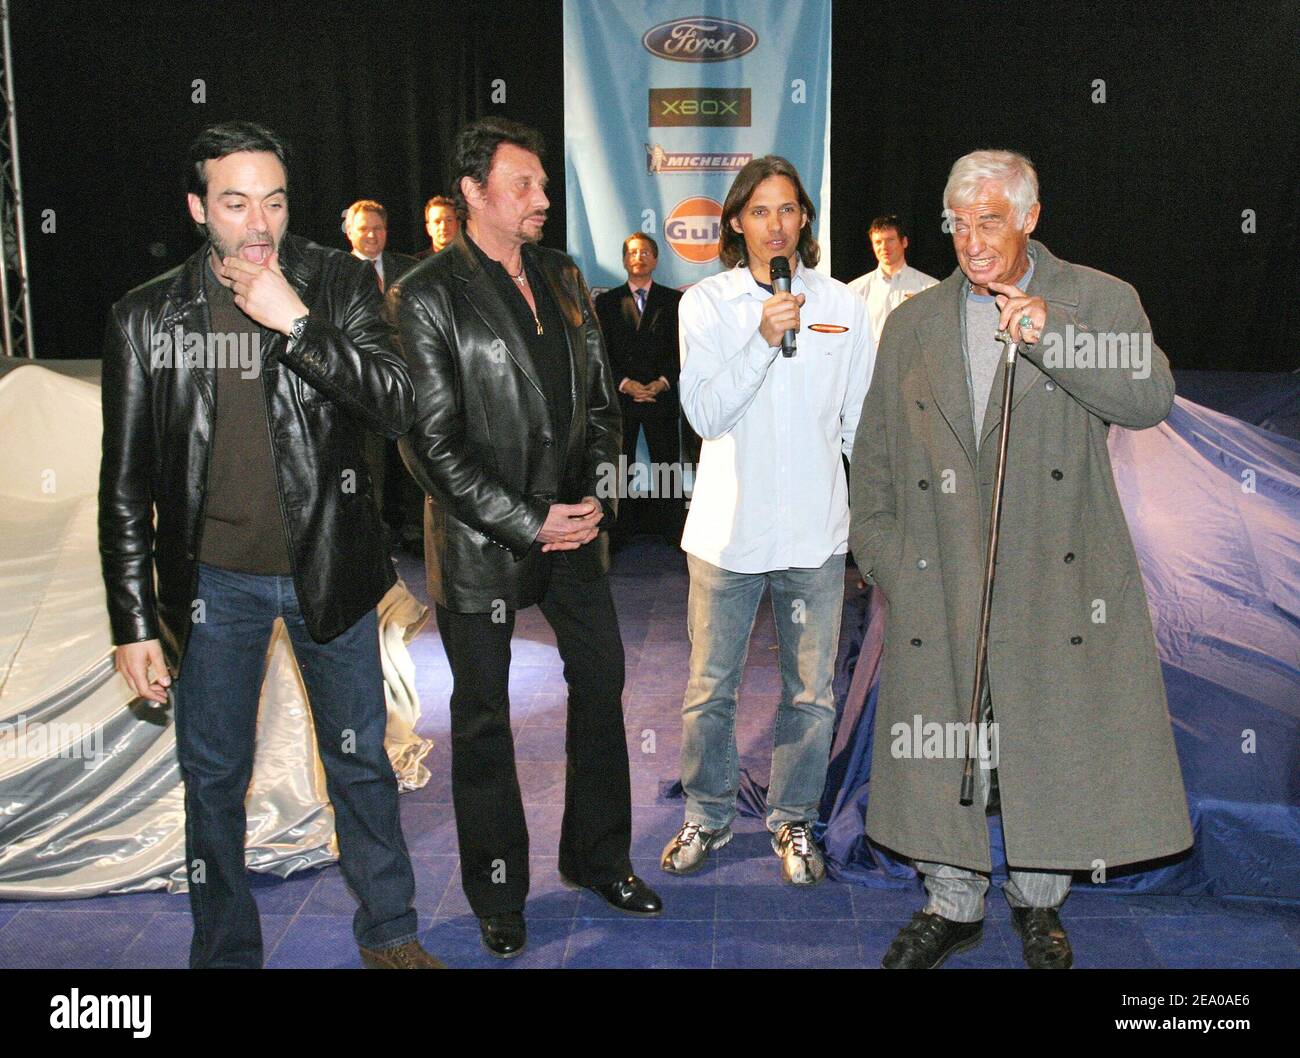 G-D) Anthony Delon, Johnny Hallyday, chauffeur et gérant de l'équipe Paul  Belmondo et son père Jean-Paul Belmondo lors d'une fête organisée à  l'Etoile à Paris, France, le 15 mars 2005, Présenter les